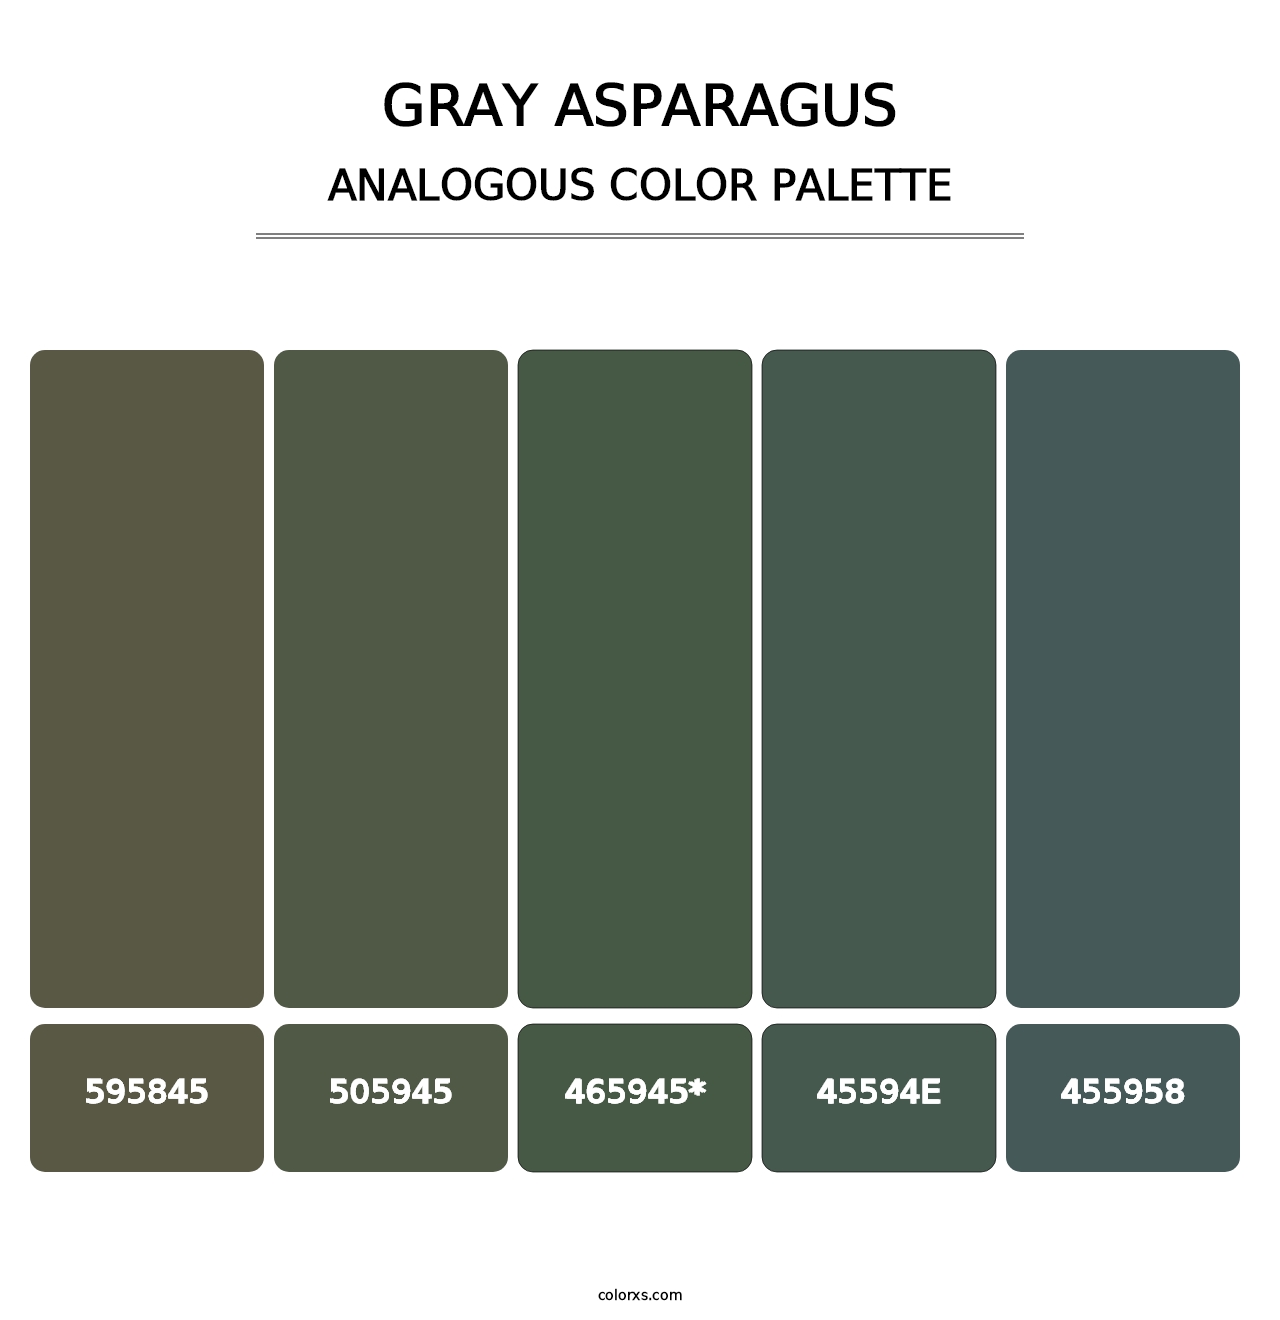 Gray Asparagus - Analogous Color Palette